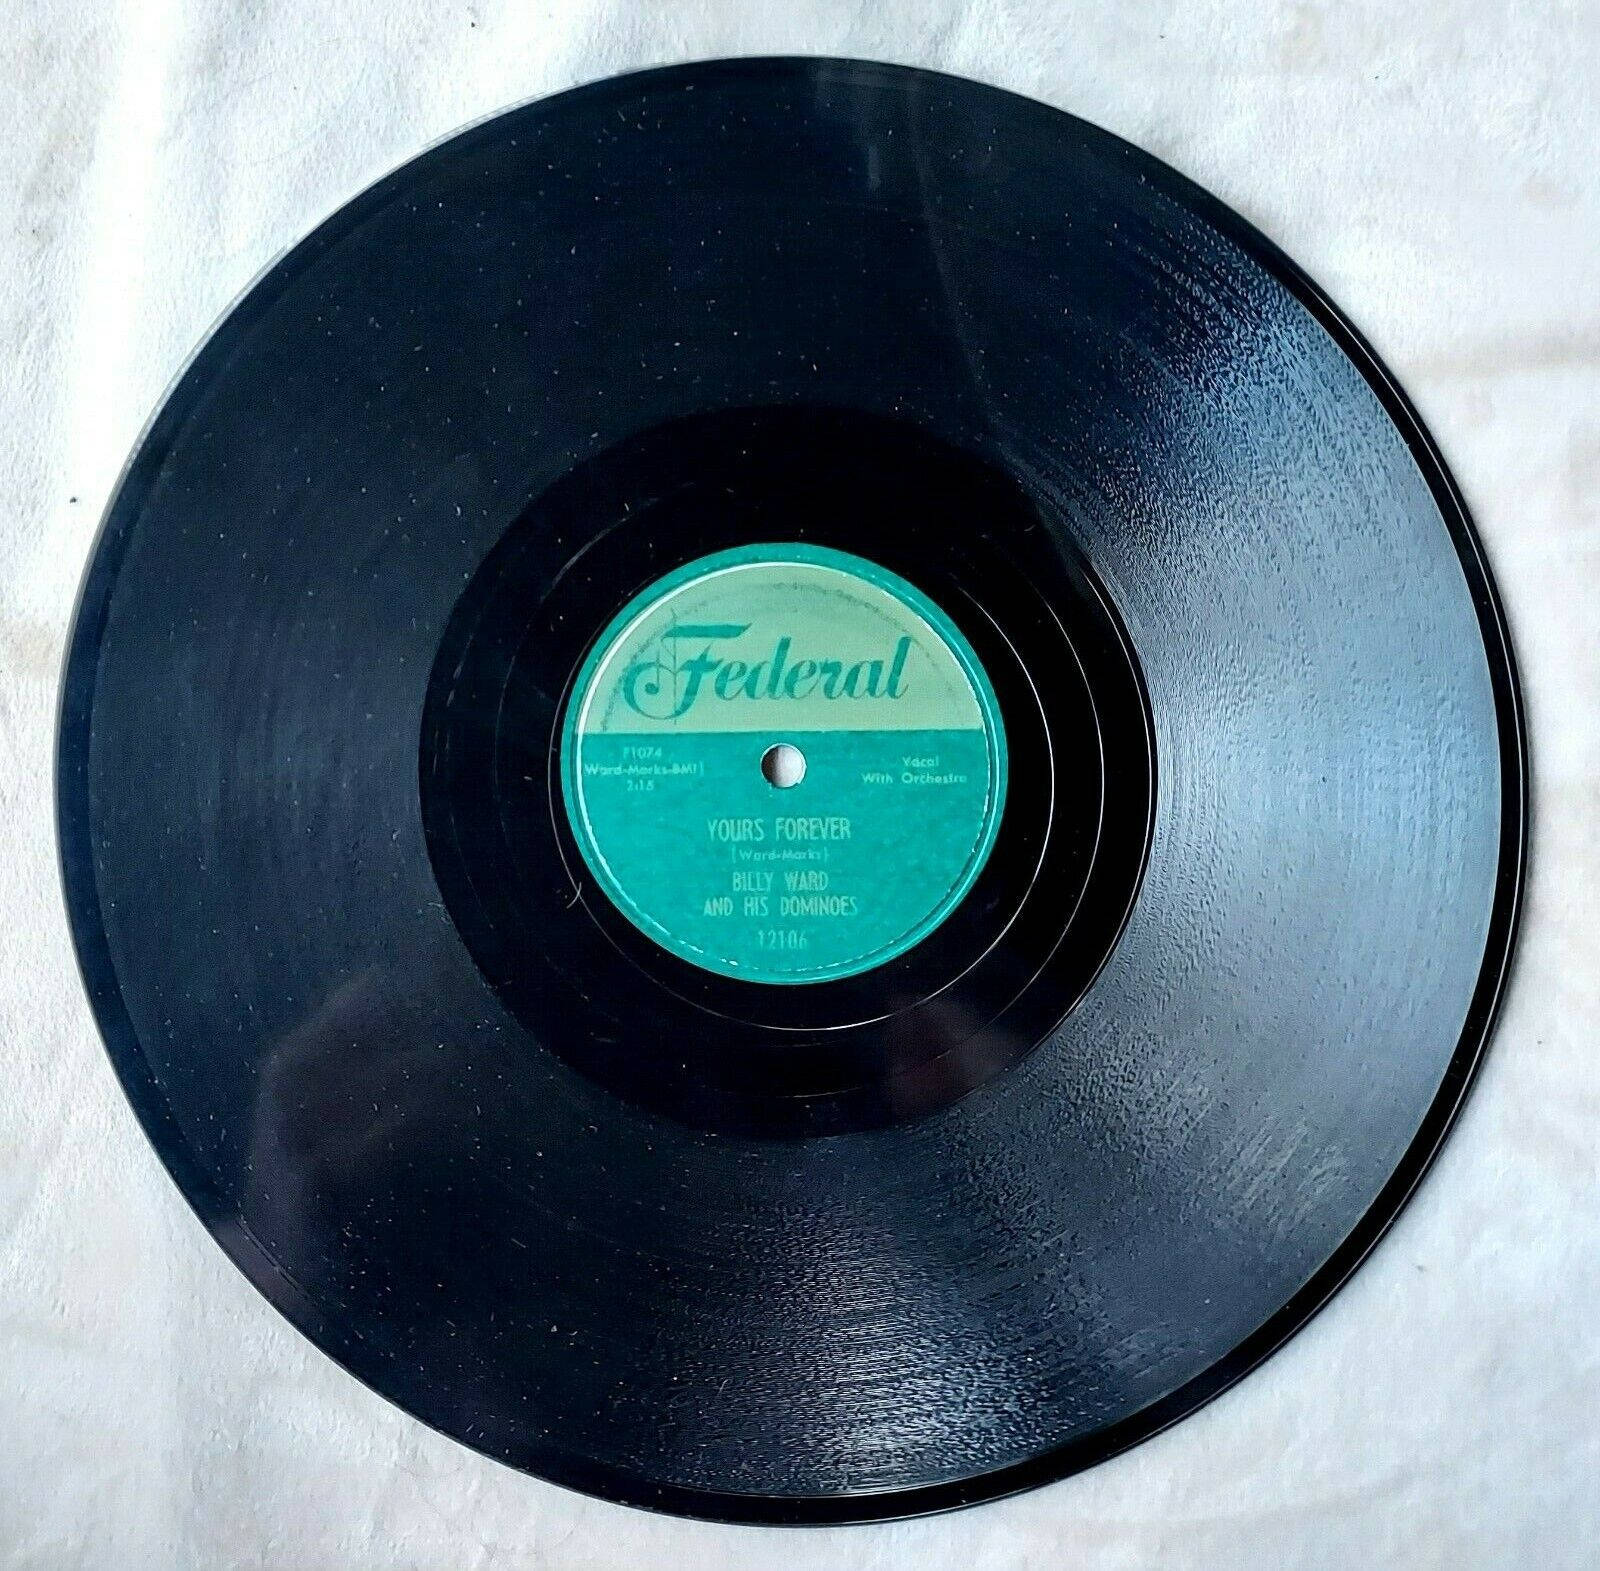 Schwarzevinyl-schallplatte Von Billy Ward Und Den Dominoes Wallpaper